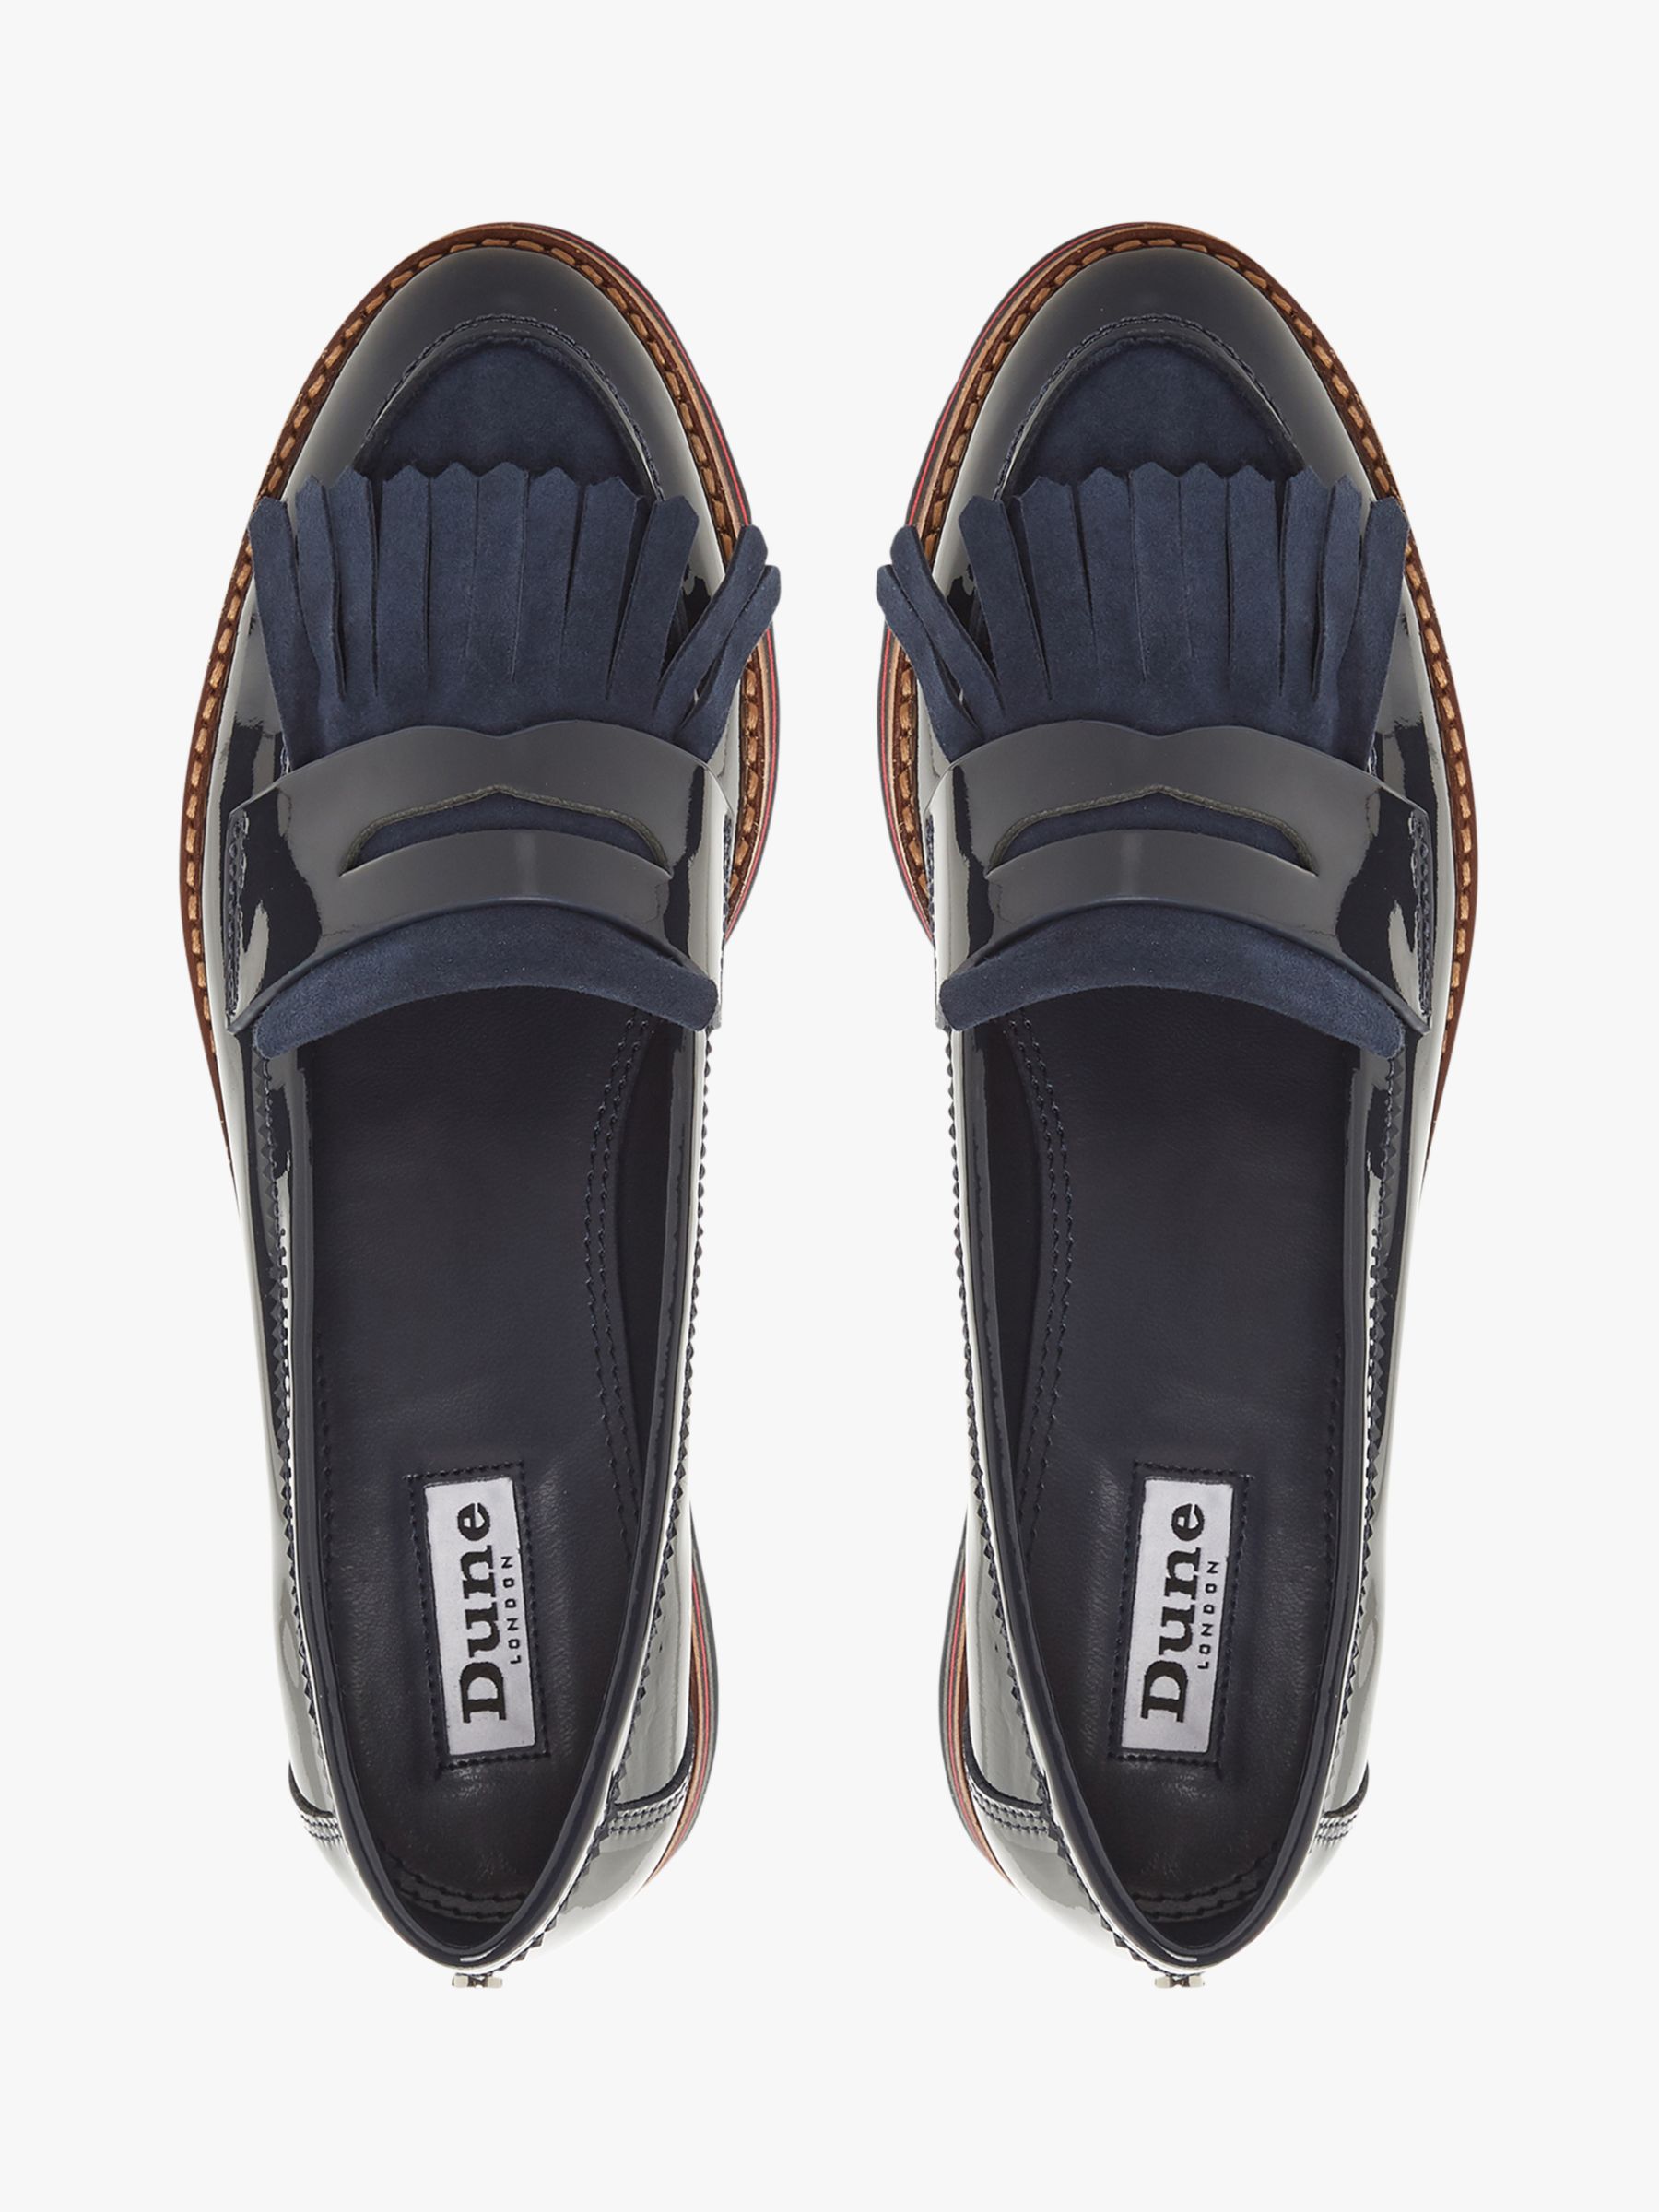 flatform loafers uk